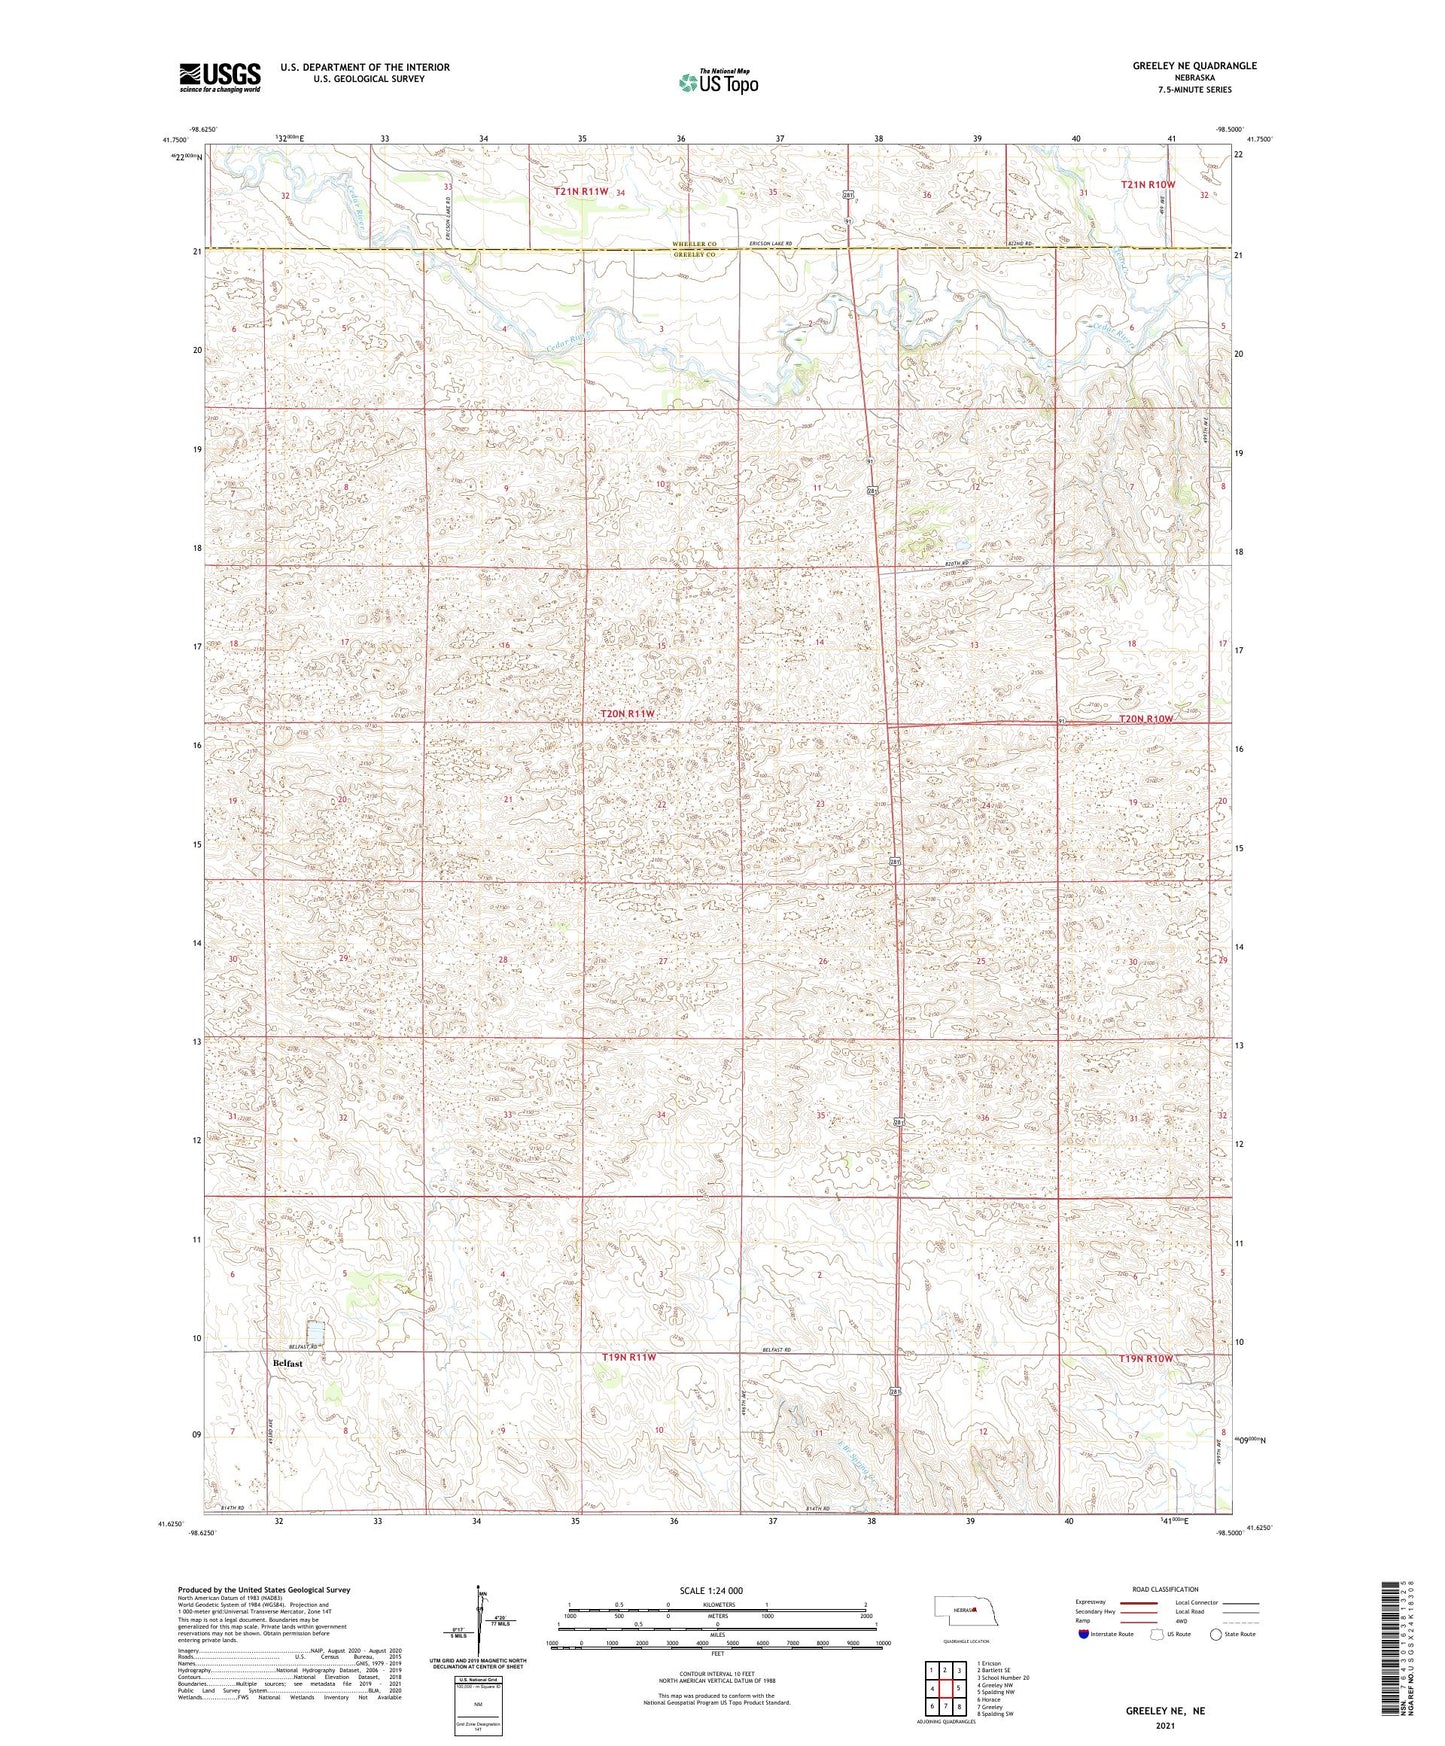 Greeley NE Nebraska US Topo Map Image